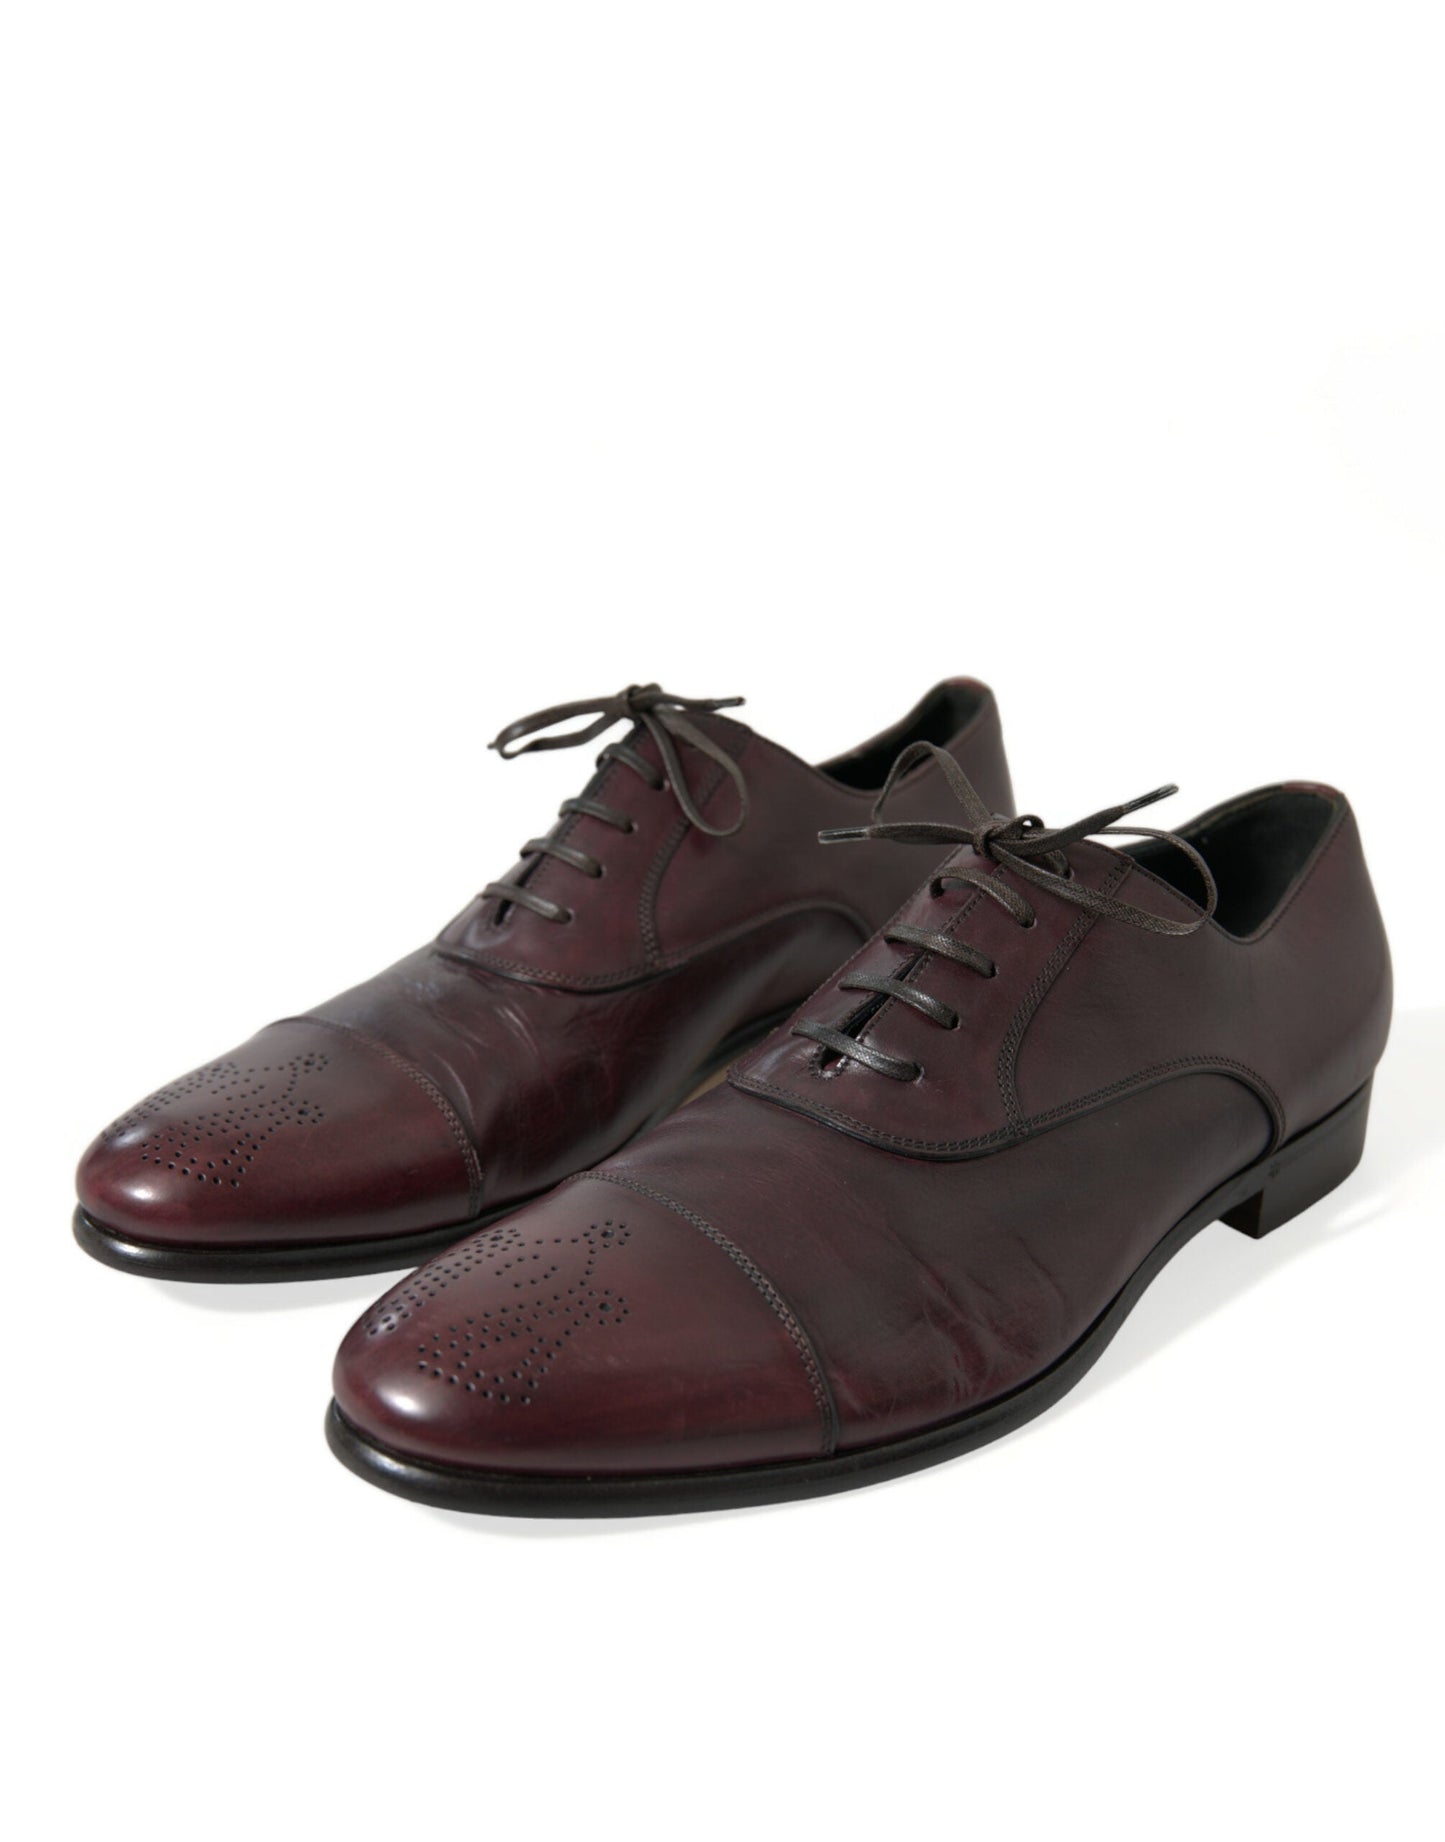 Fashionsarah.com Fashionsarah.com Dolce & Gabbana Bordeaux Leather Men Formal Derby Dress Shoes